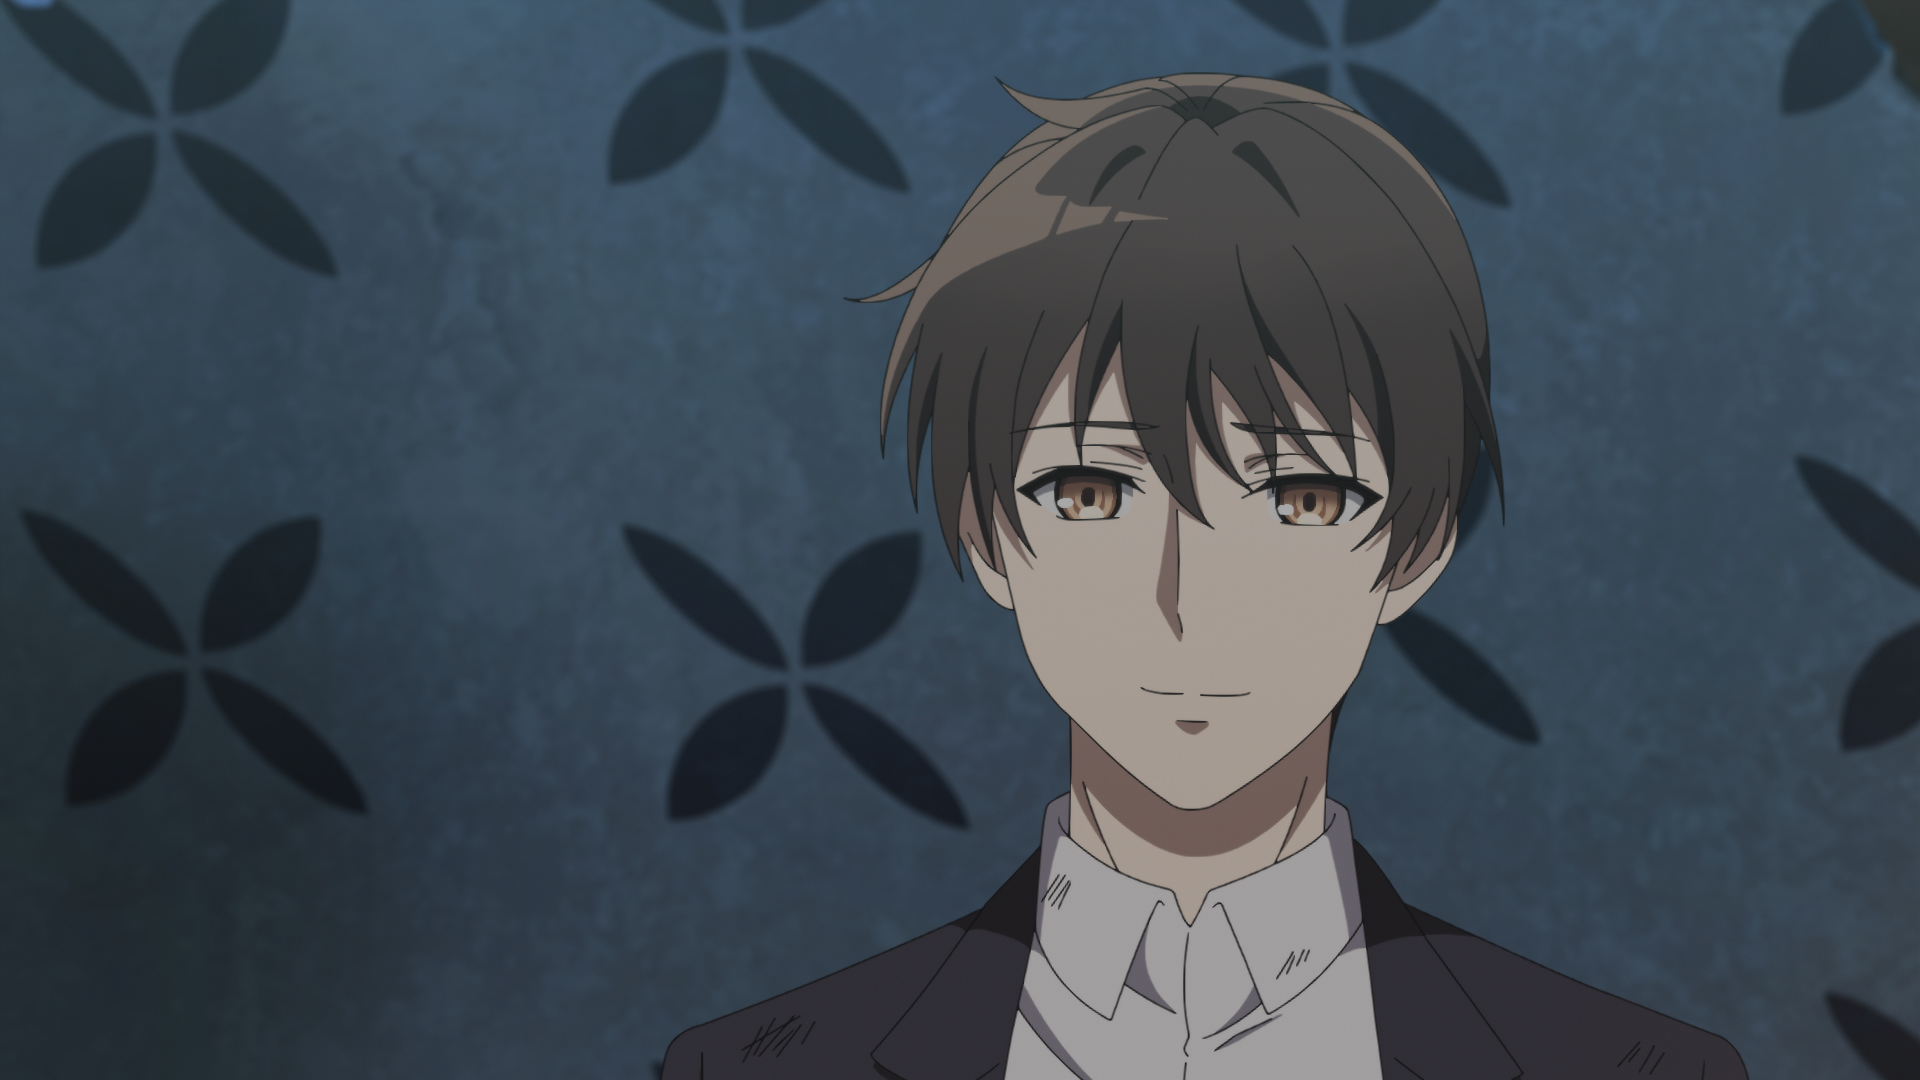 Captura de tela do episódio 12 de "The Detective is Already Dead", mostrando Kimihiko